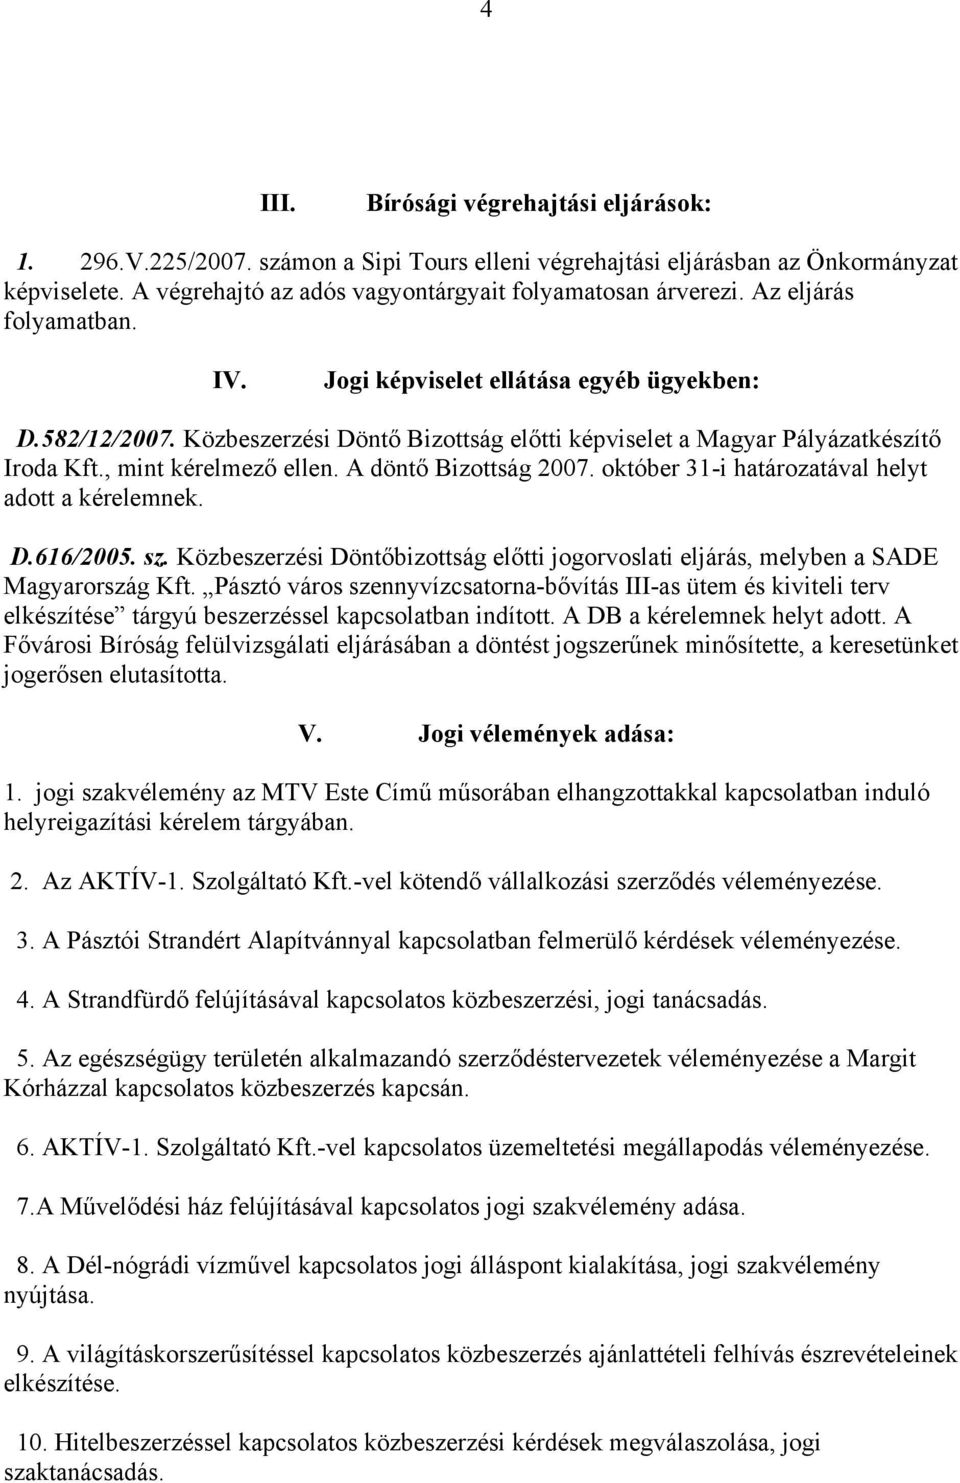 A döntő Bizottság 2007. október 31-i határozatával helyt adott a kérelemnek. D.616/2005. sz. Közbeszerzési Döntőbizottság előtti jogorvoslati eljárás, melyben a SADE Magyarország Kft.